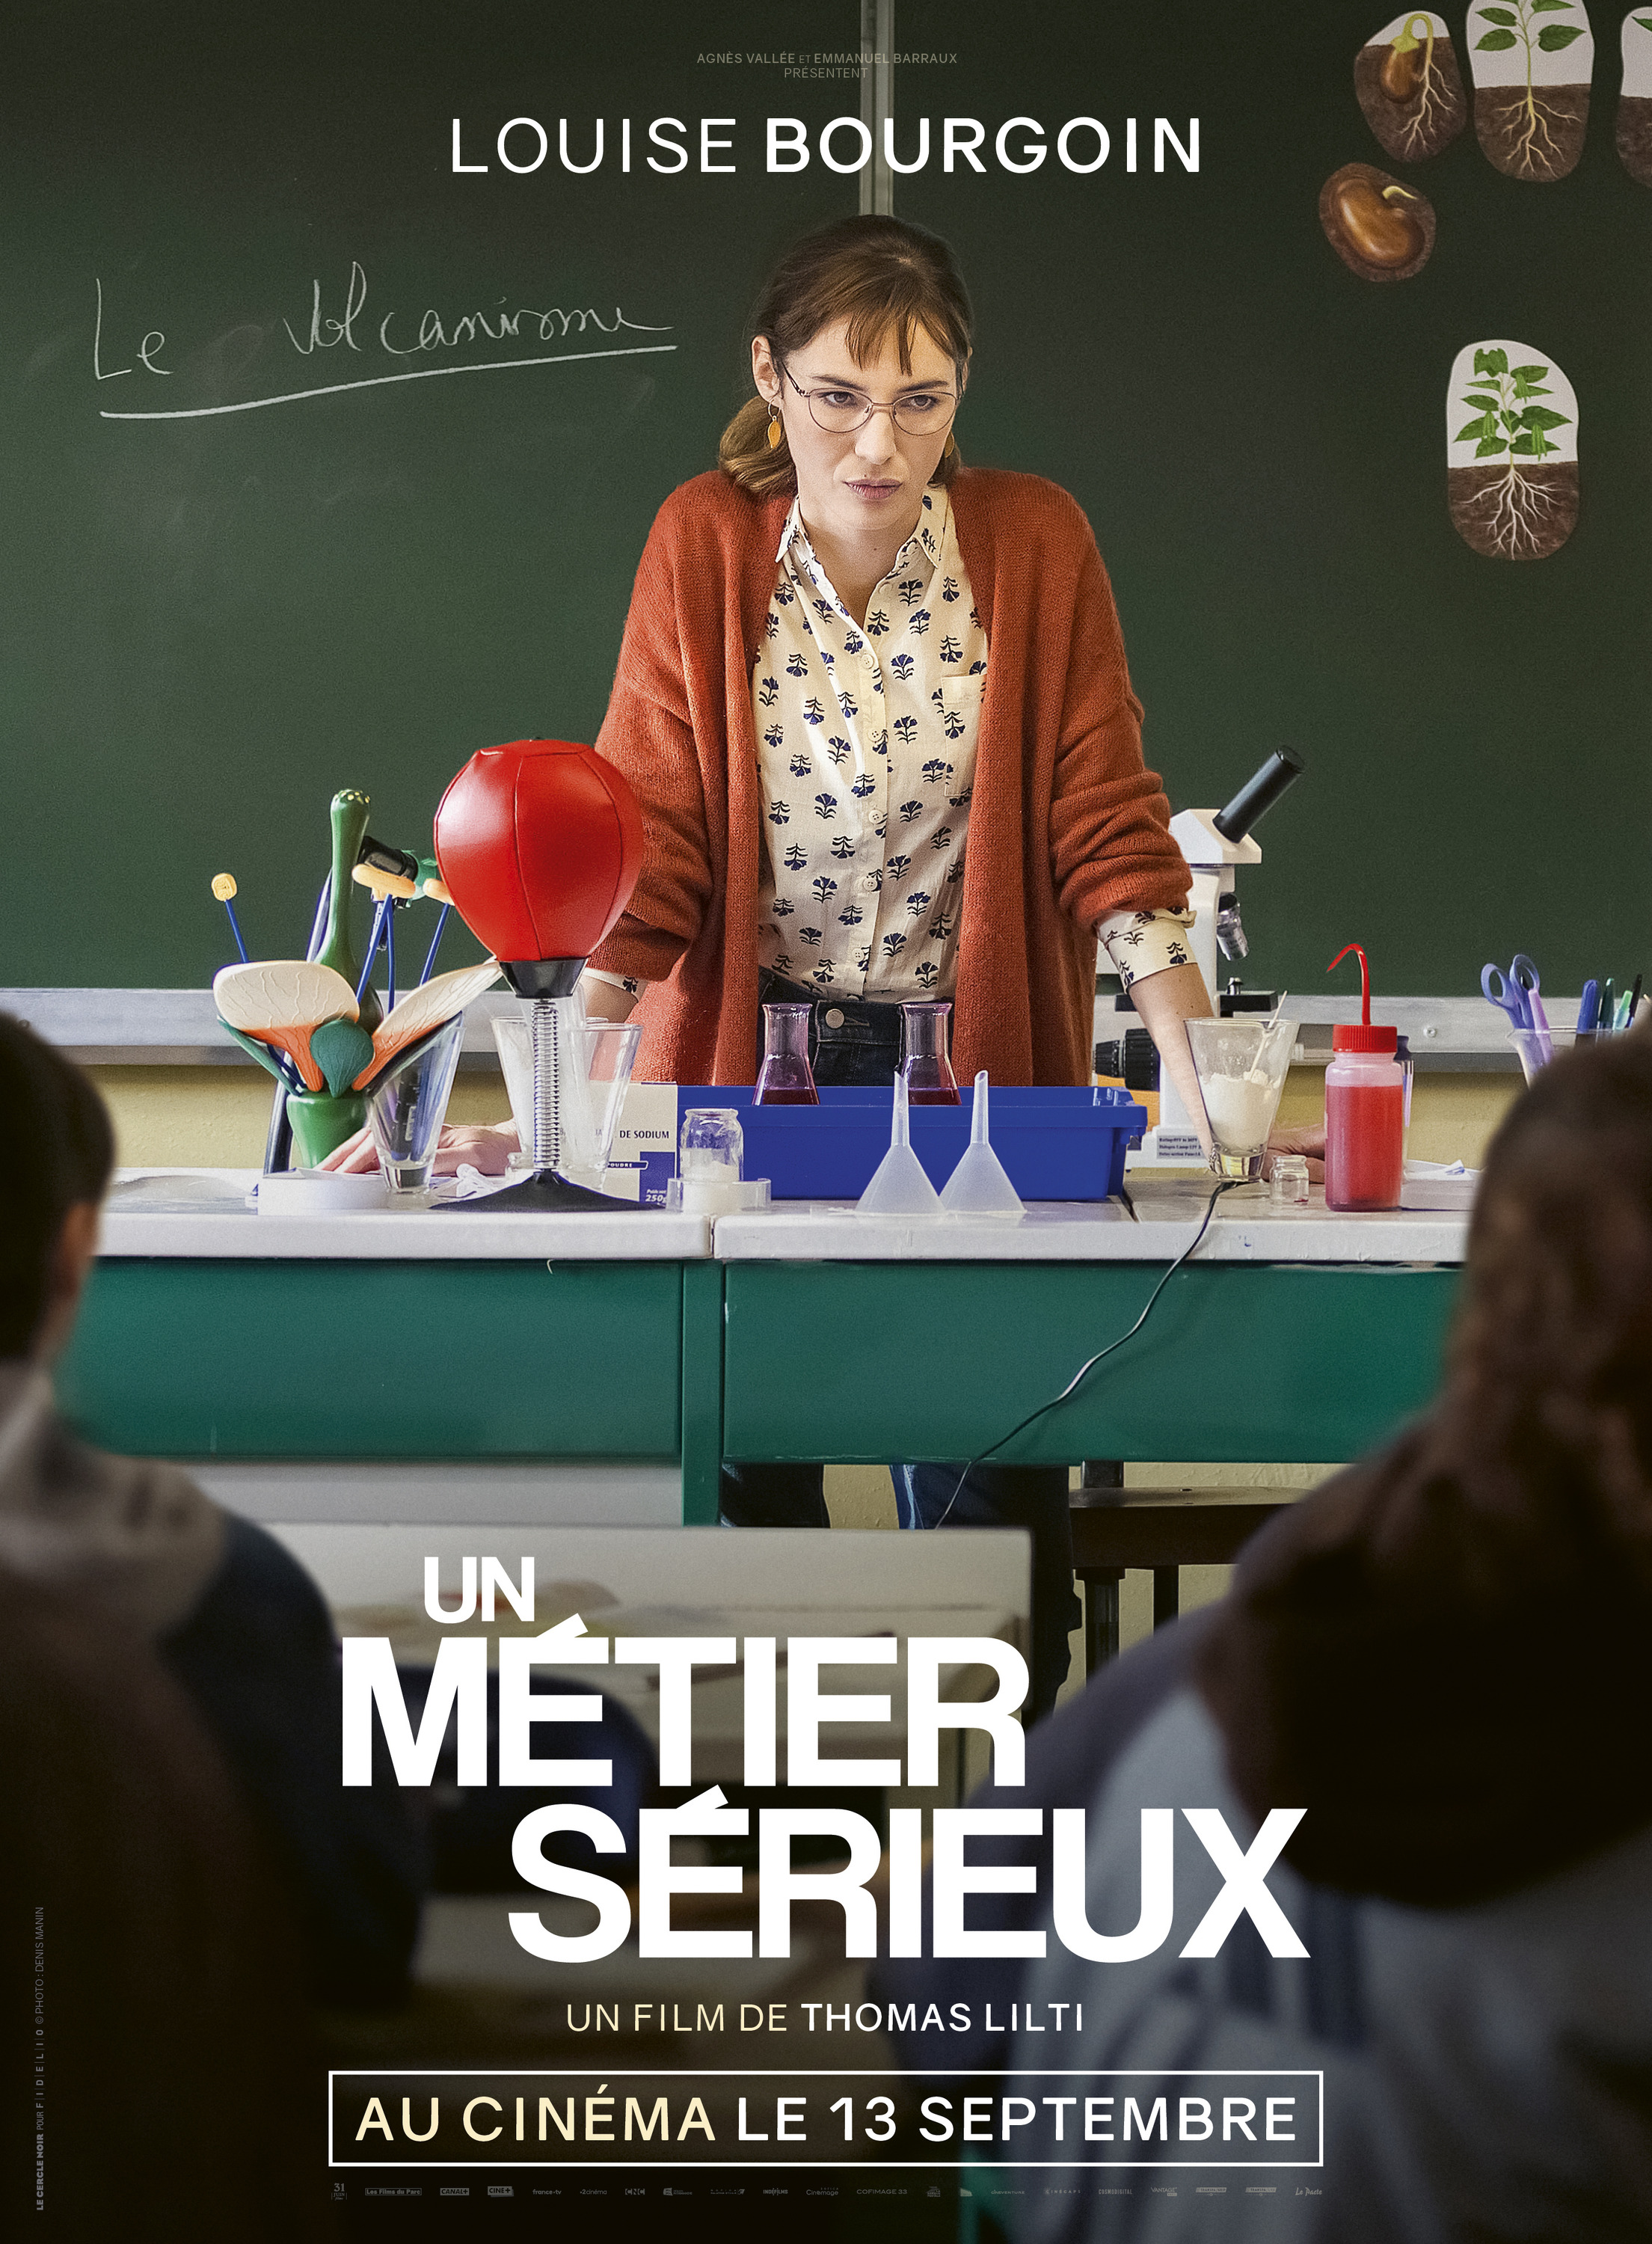 Mega Sized Movie Poster Image for Un métier sérieux (#2 of 7)